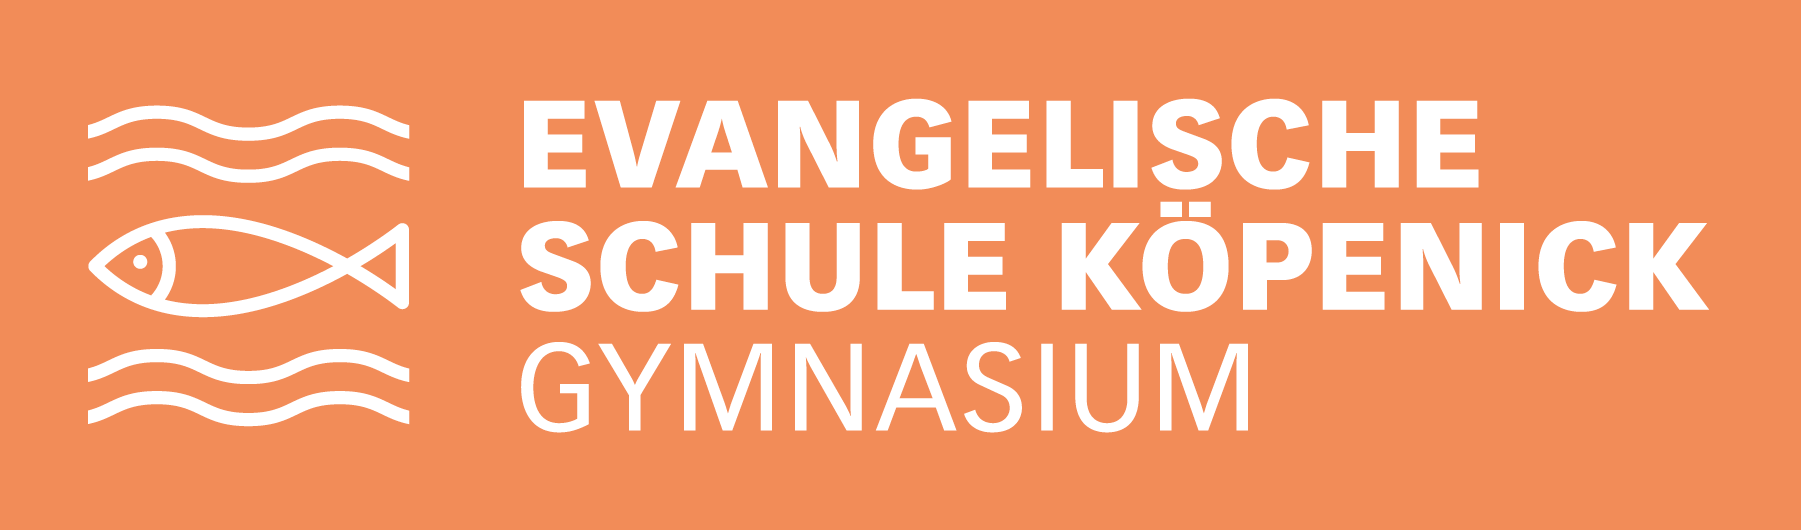 Evangelische Schule Köpenick